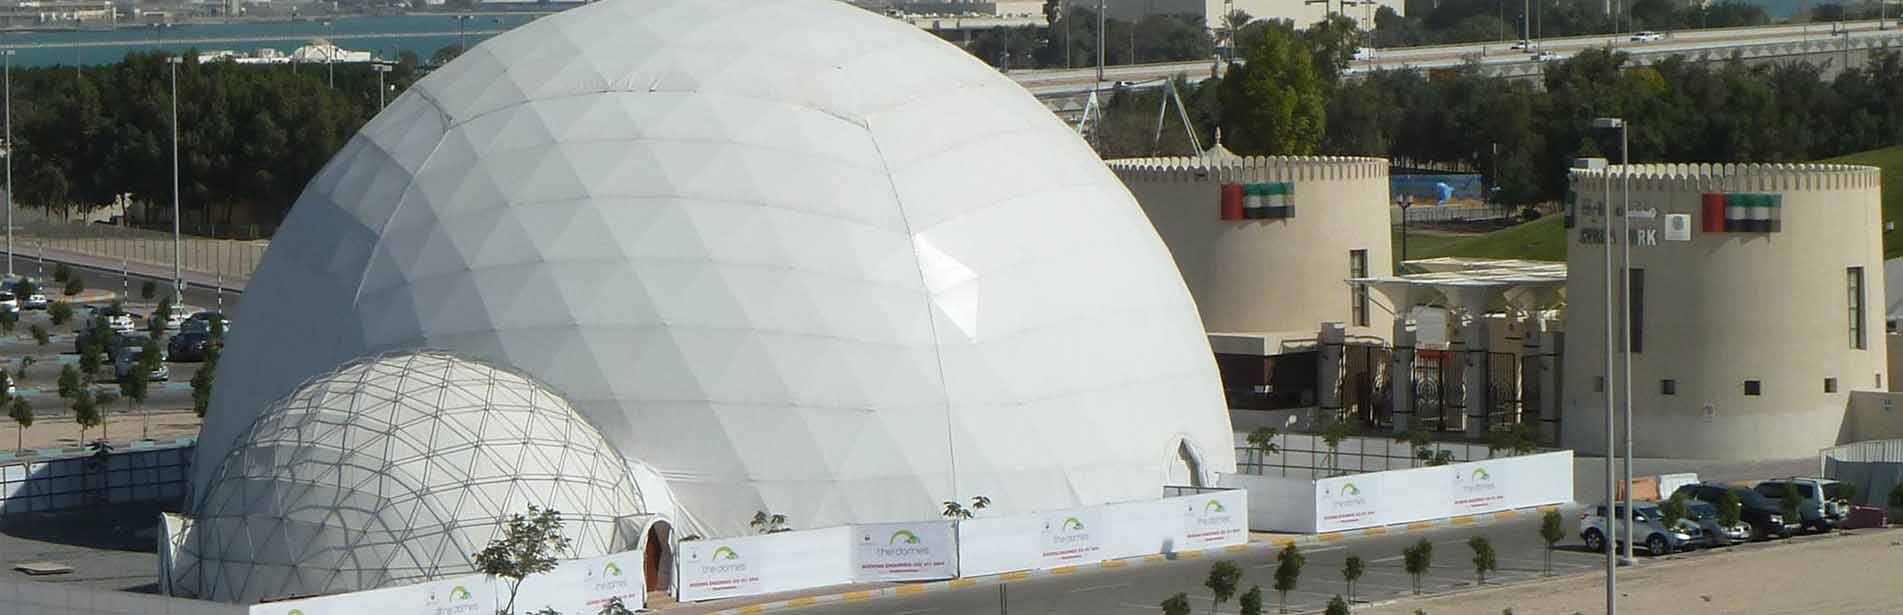 Event Domes in Dubai